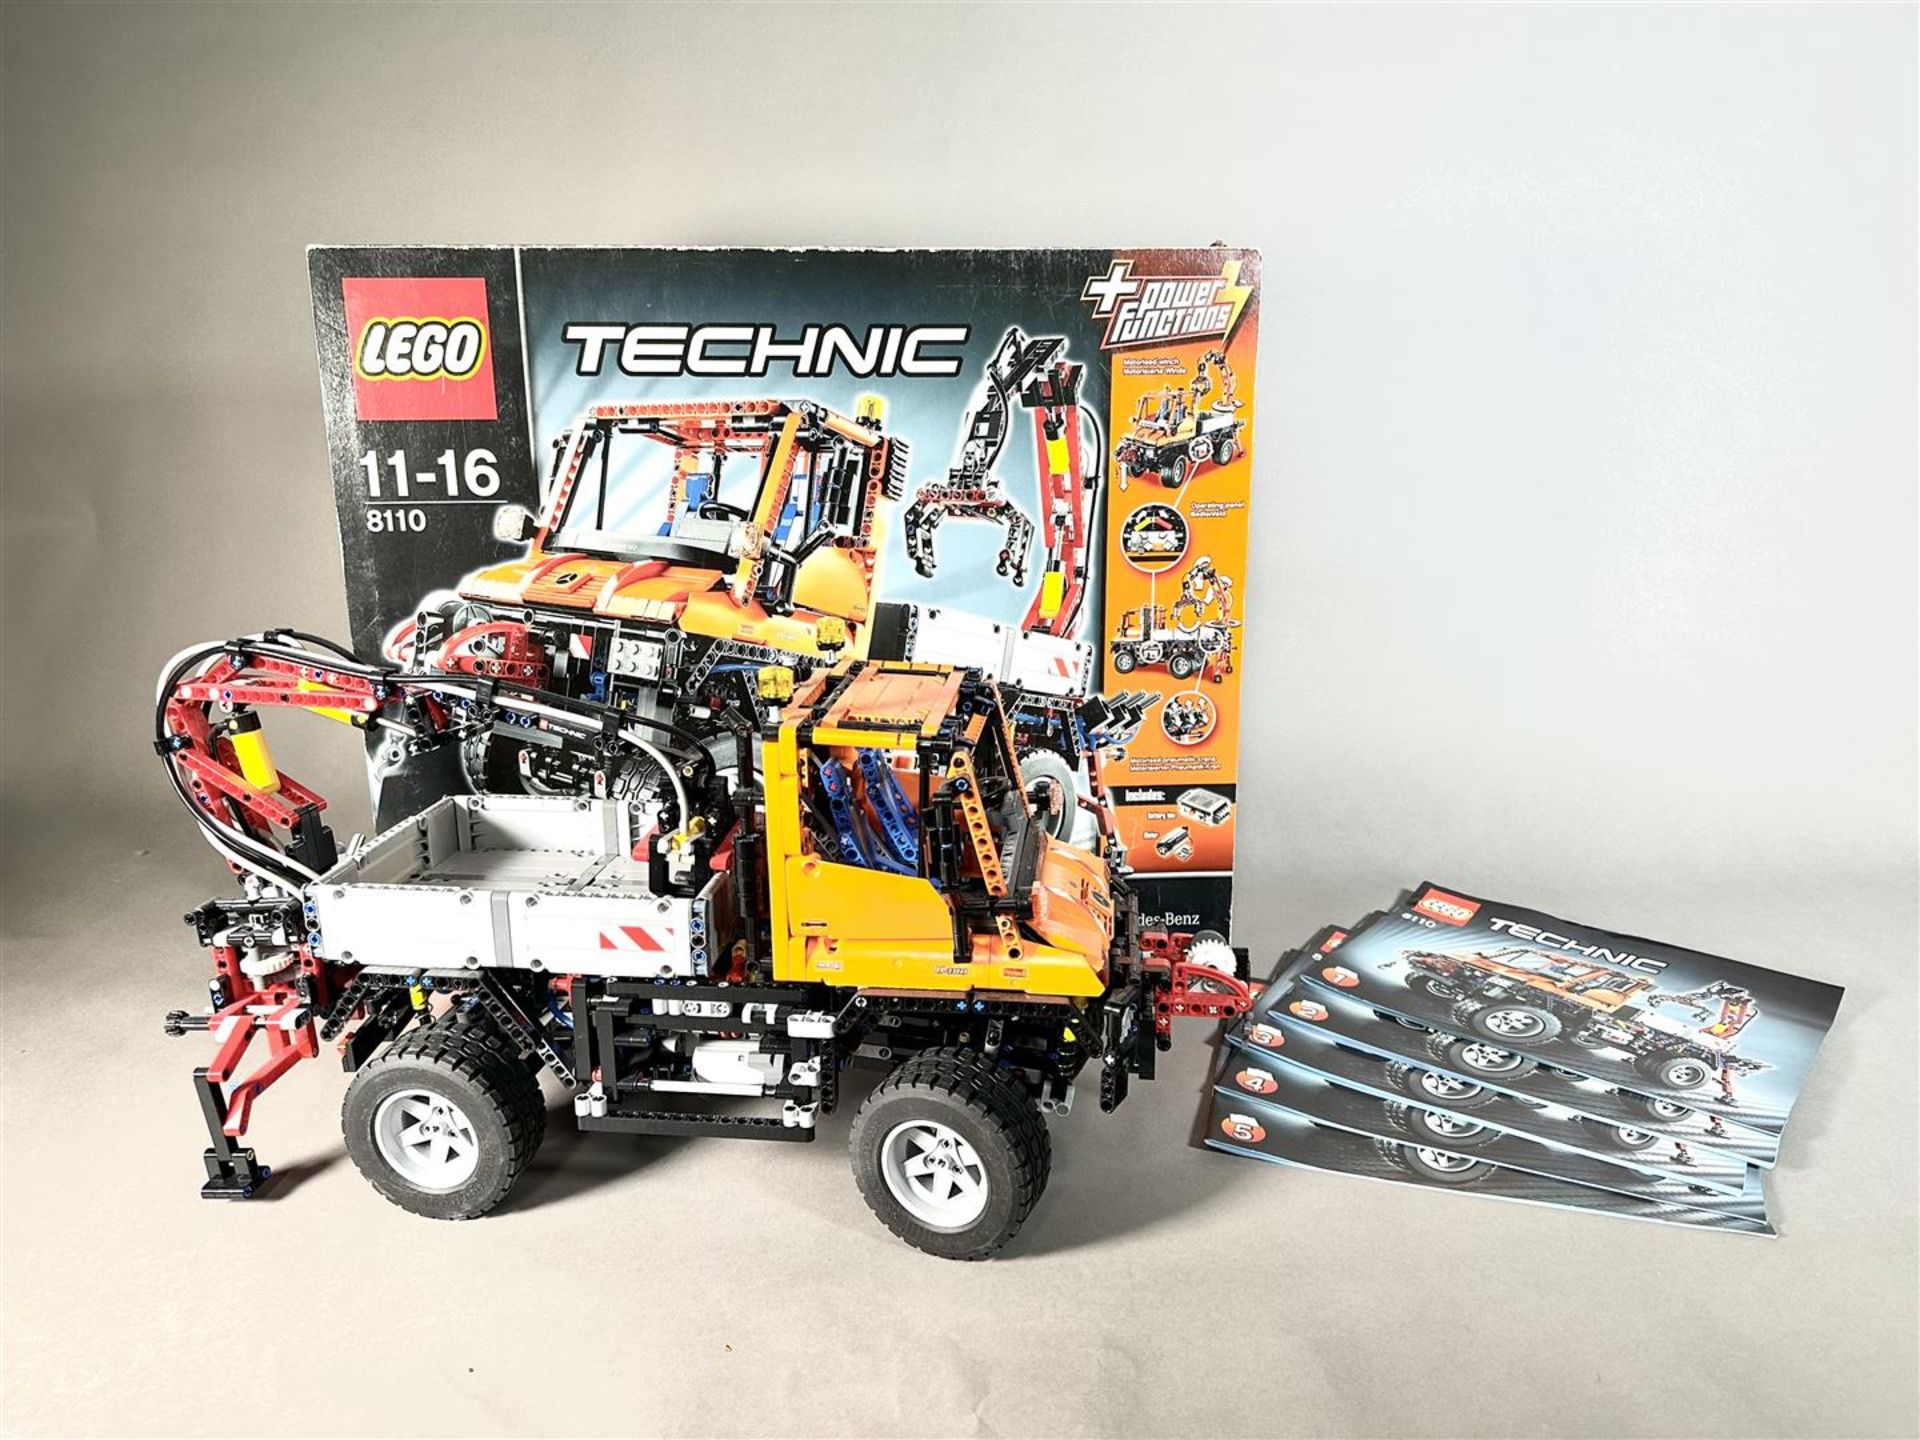 8110, Unimog U400, LEGO Technic